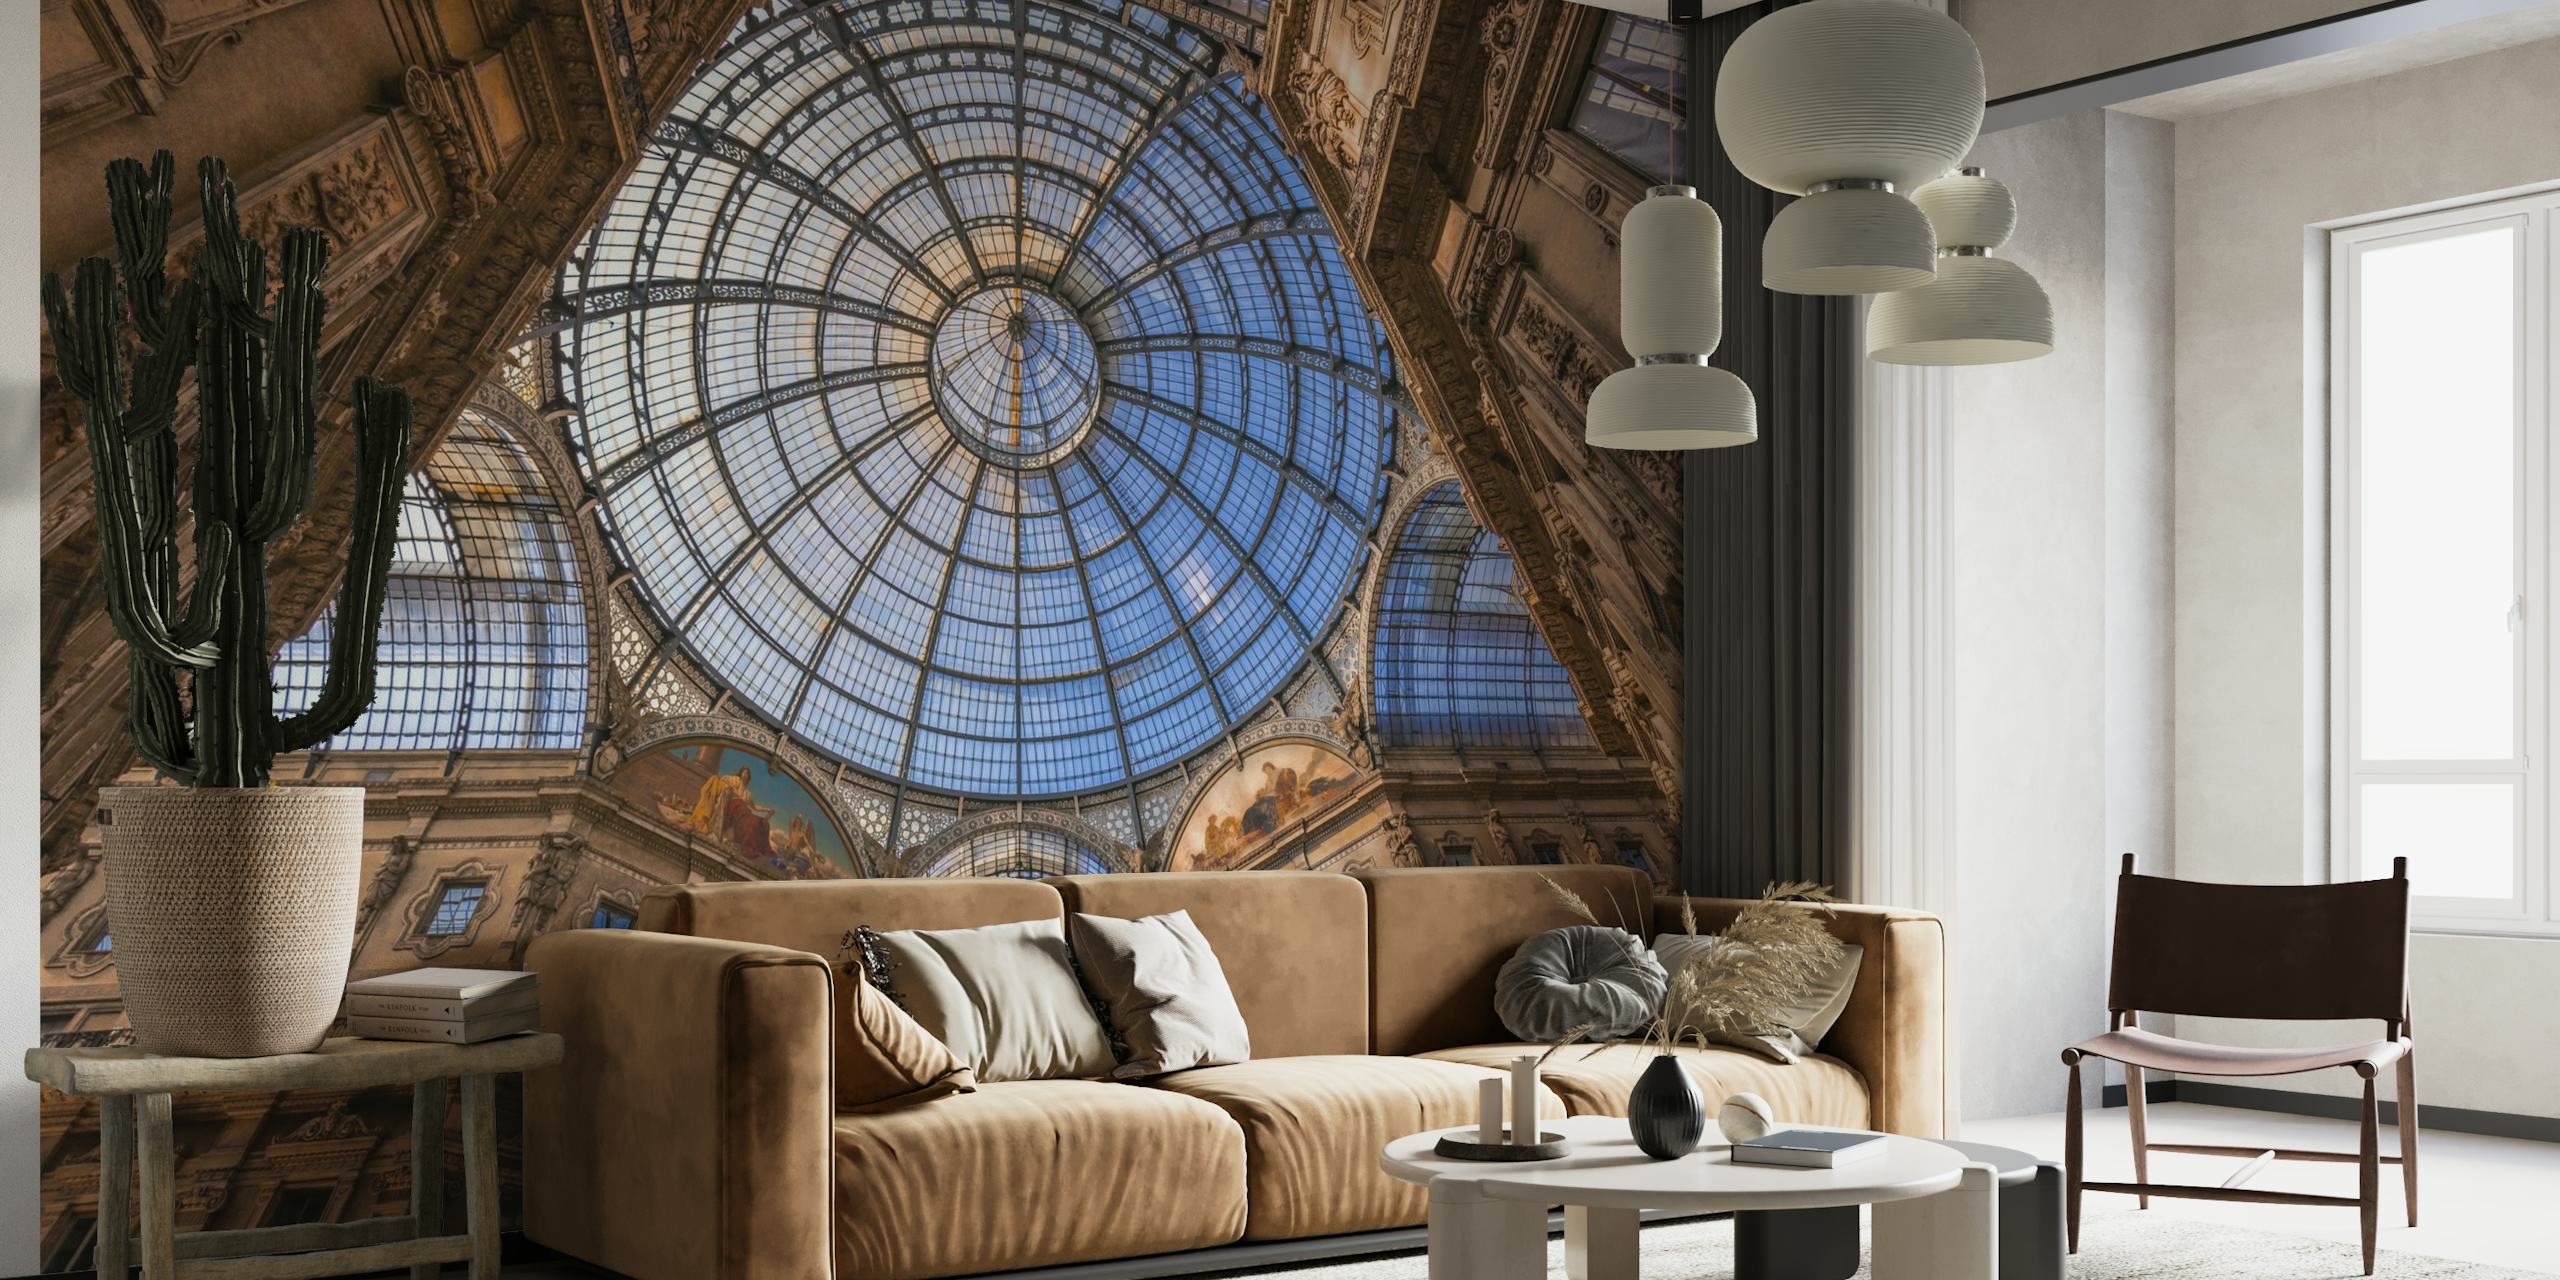 Arkitektonisk kupol takmålning i nyanser av blått och beige, förstärker rumsinredningen med en majestätisk touch.